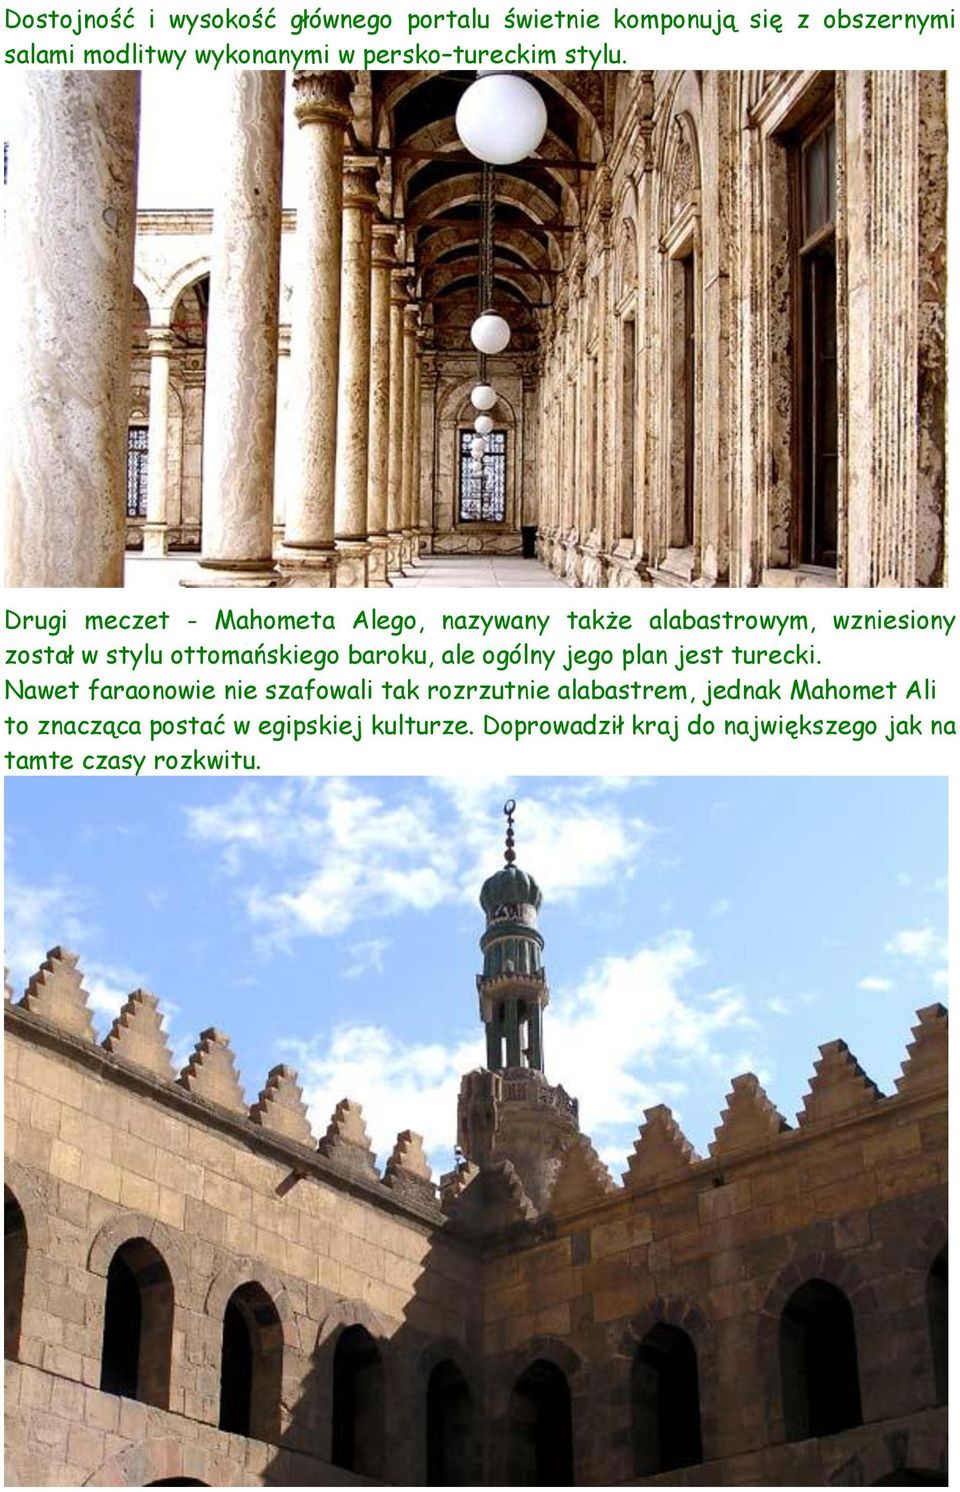 Drugi meczet - Mahometa Alego, nazywany także alabastrowym, wzniesiony został w stylu ottomańskiego baroku, ale